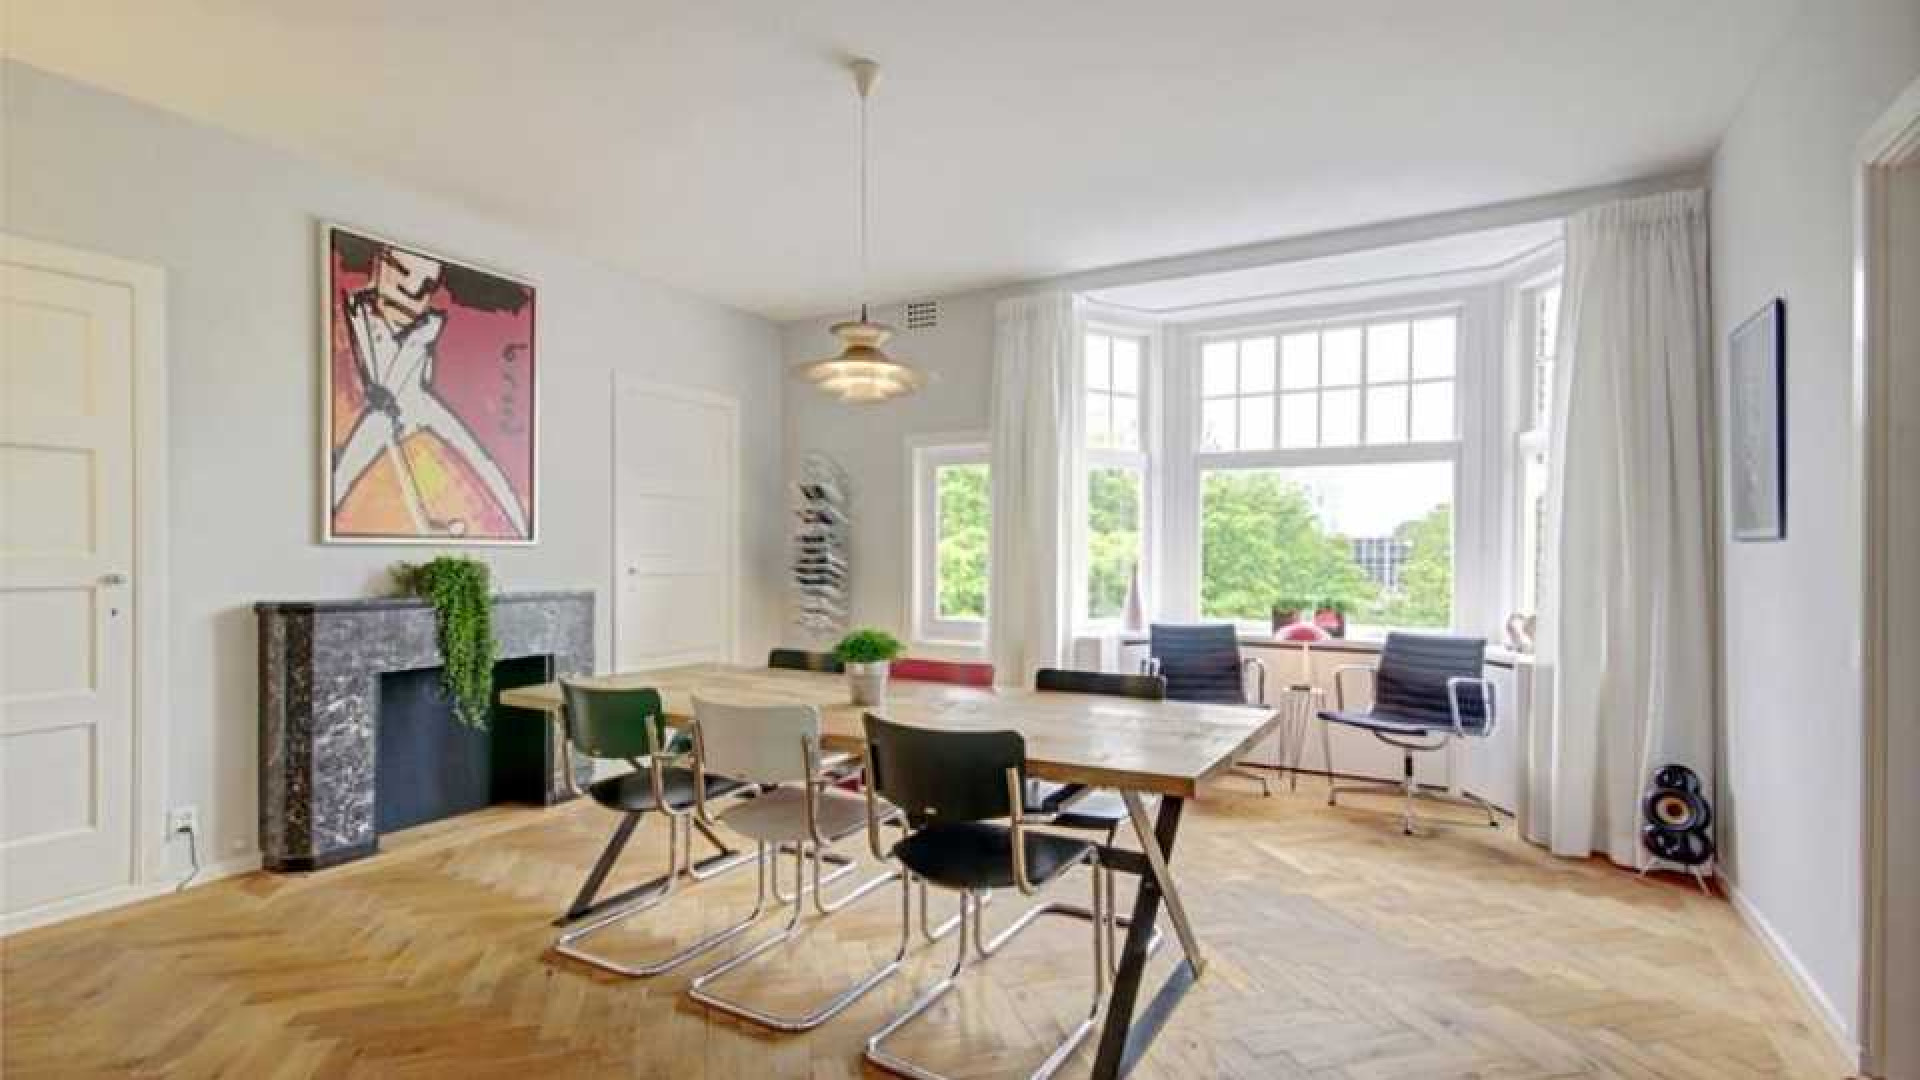 Flikken Maastricht acteur Victor Reinier koopt luxe appartement in Amsterdam Zuid. Zie foto's 4